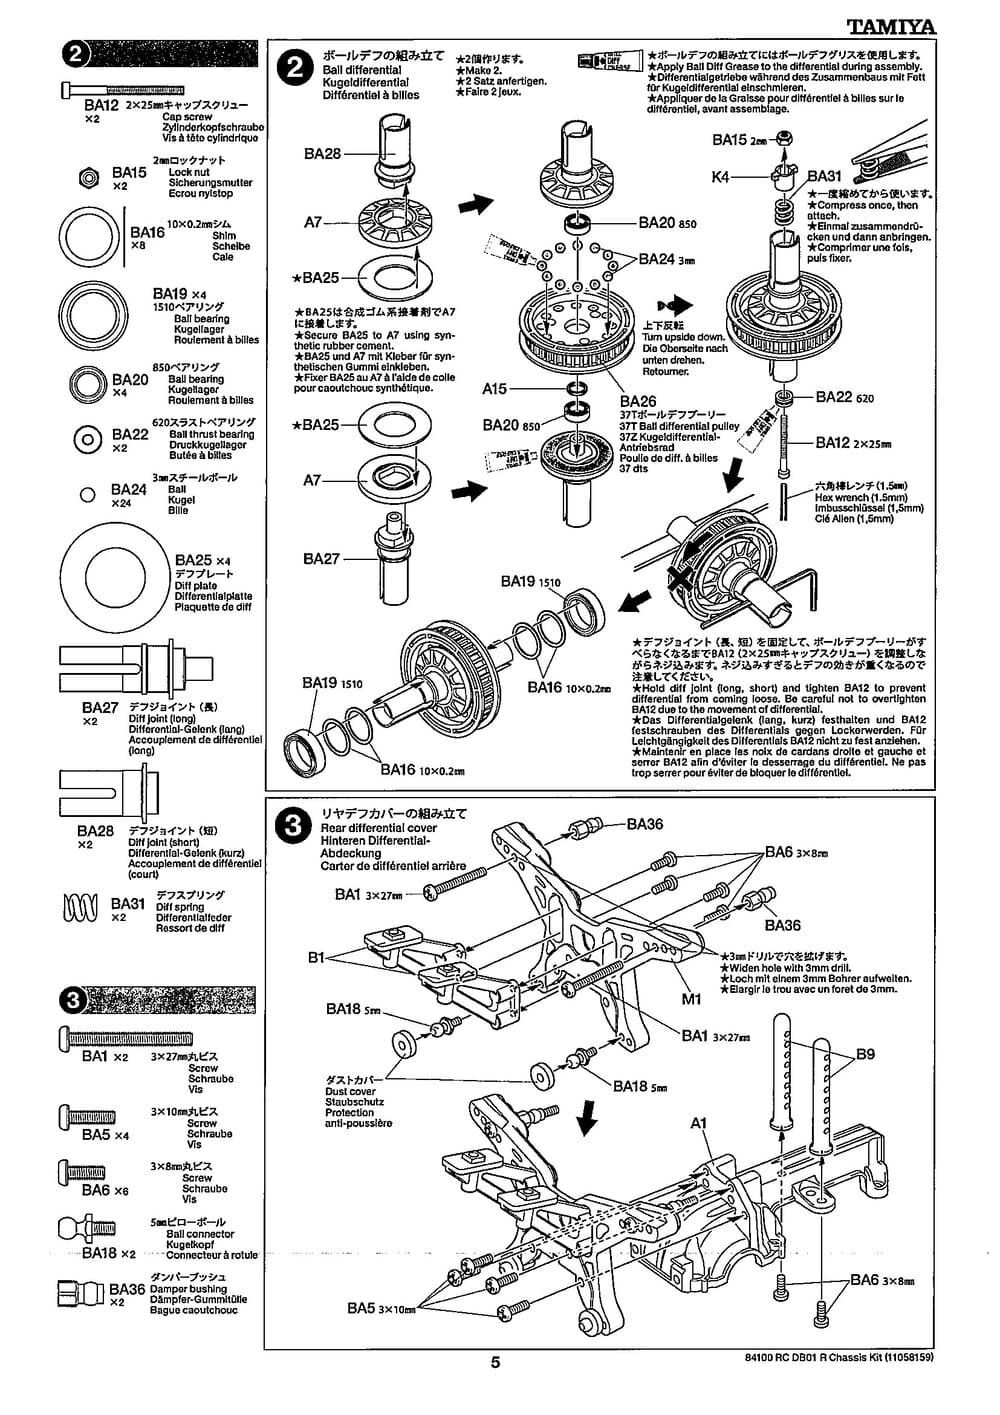 Tamiya - DB-01R Chassis - Manual - Page 5